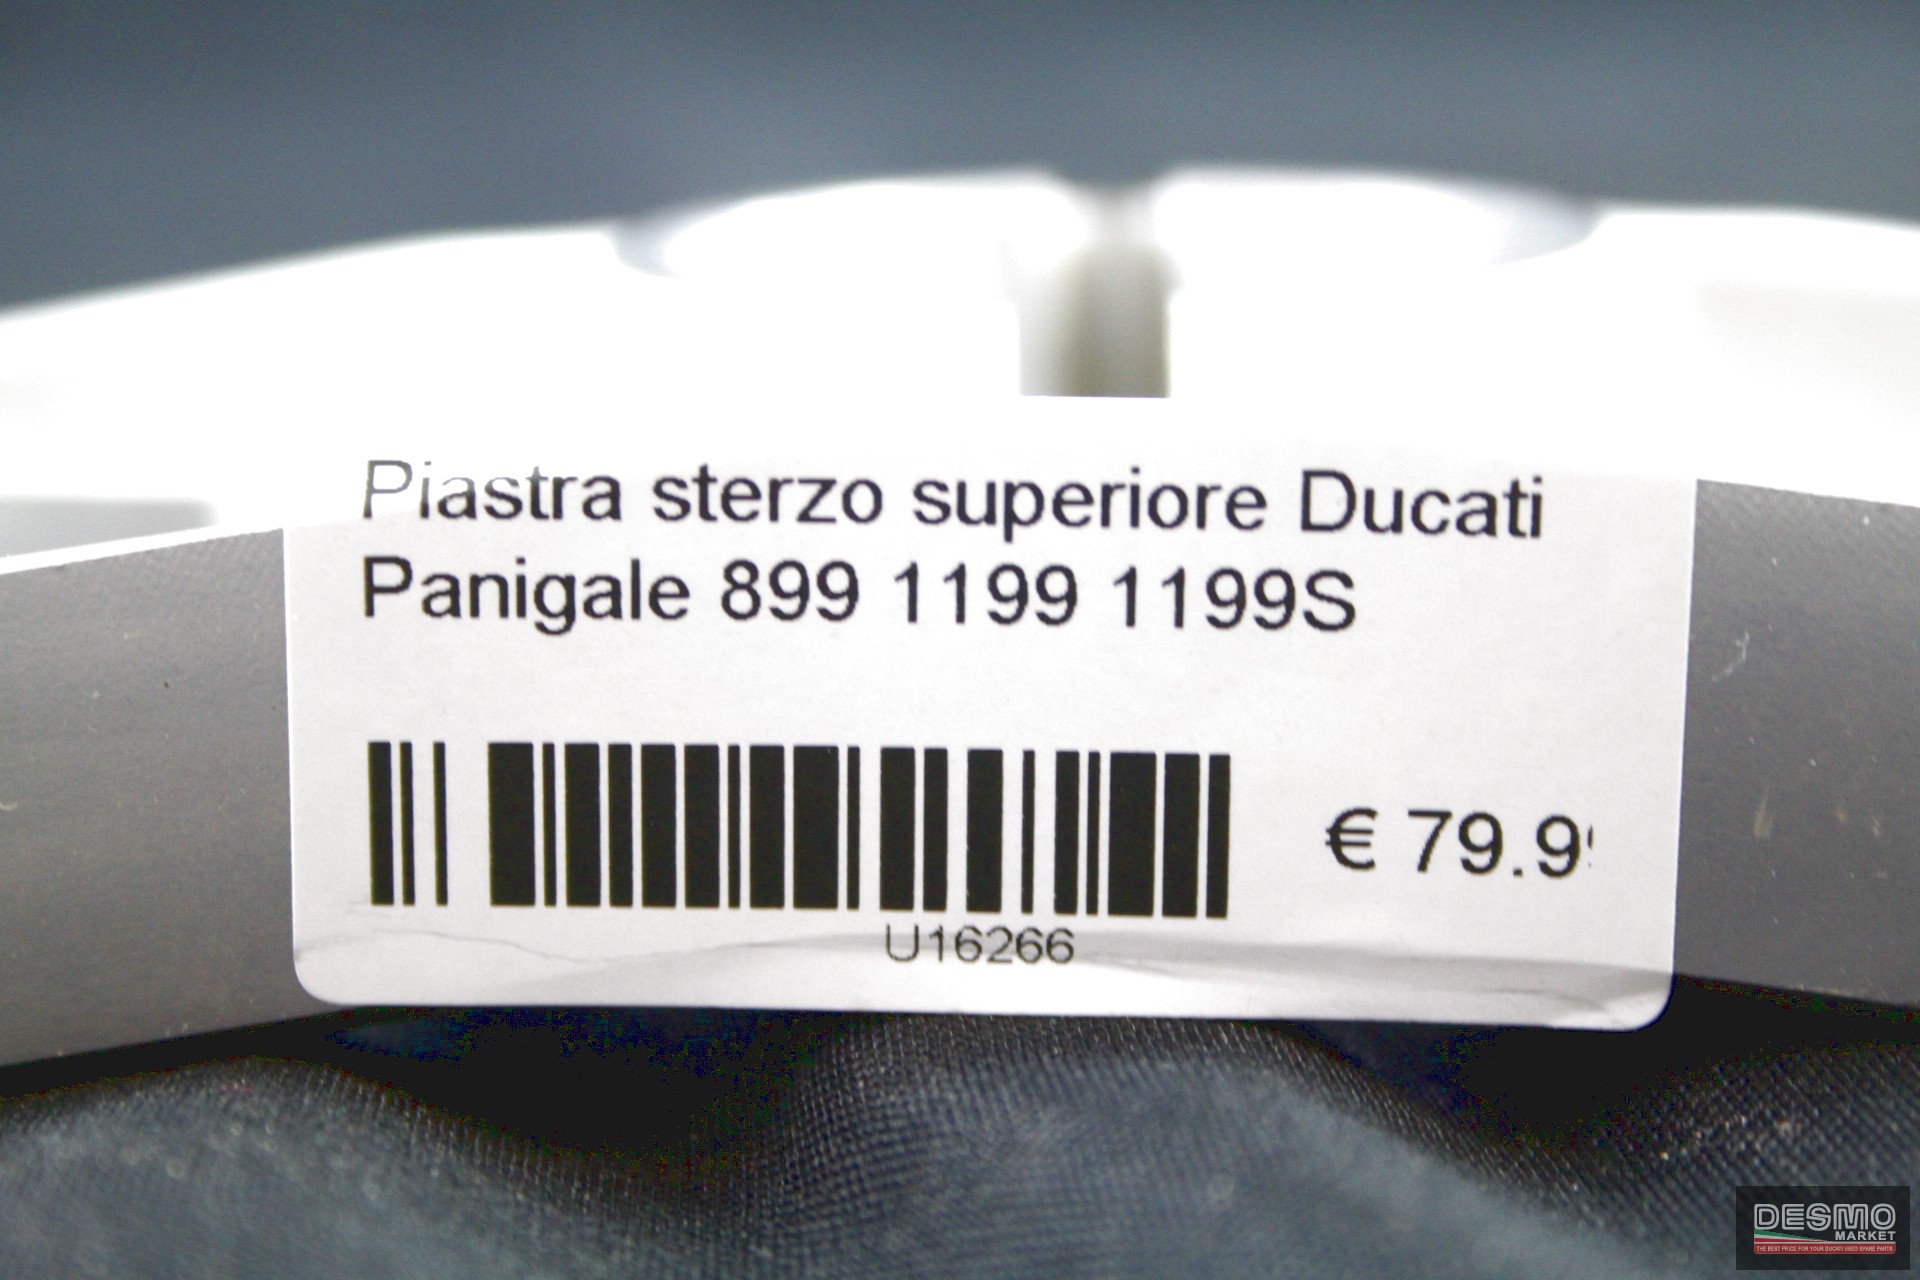 Piastra sterzo superiore Ducati Panigale 899 1199 1199S